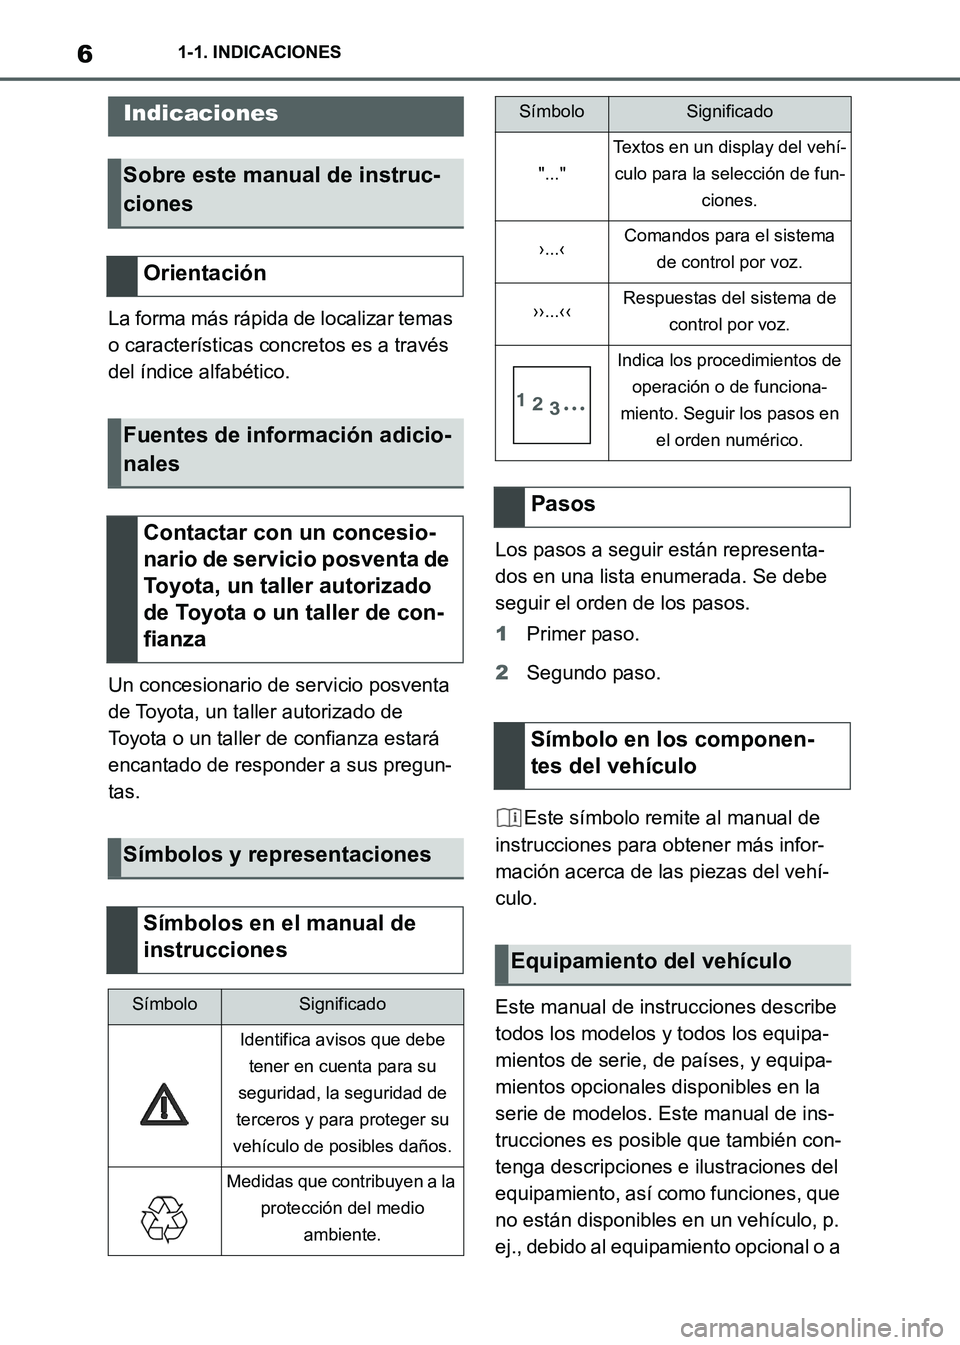 TOYOTA SUPRA 2021  Manuale de Empleo (in Spanish) 61-1. INDICACIONES
Supra Owners Manual_S (from Nov. 20 Prod.)
1-1.INDICACIONES
La forma más rápida de localizar temas 
o características concretos es a través 
del índice alfabético.
Un conces